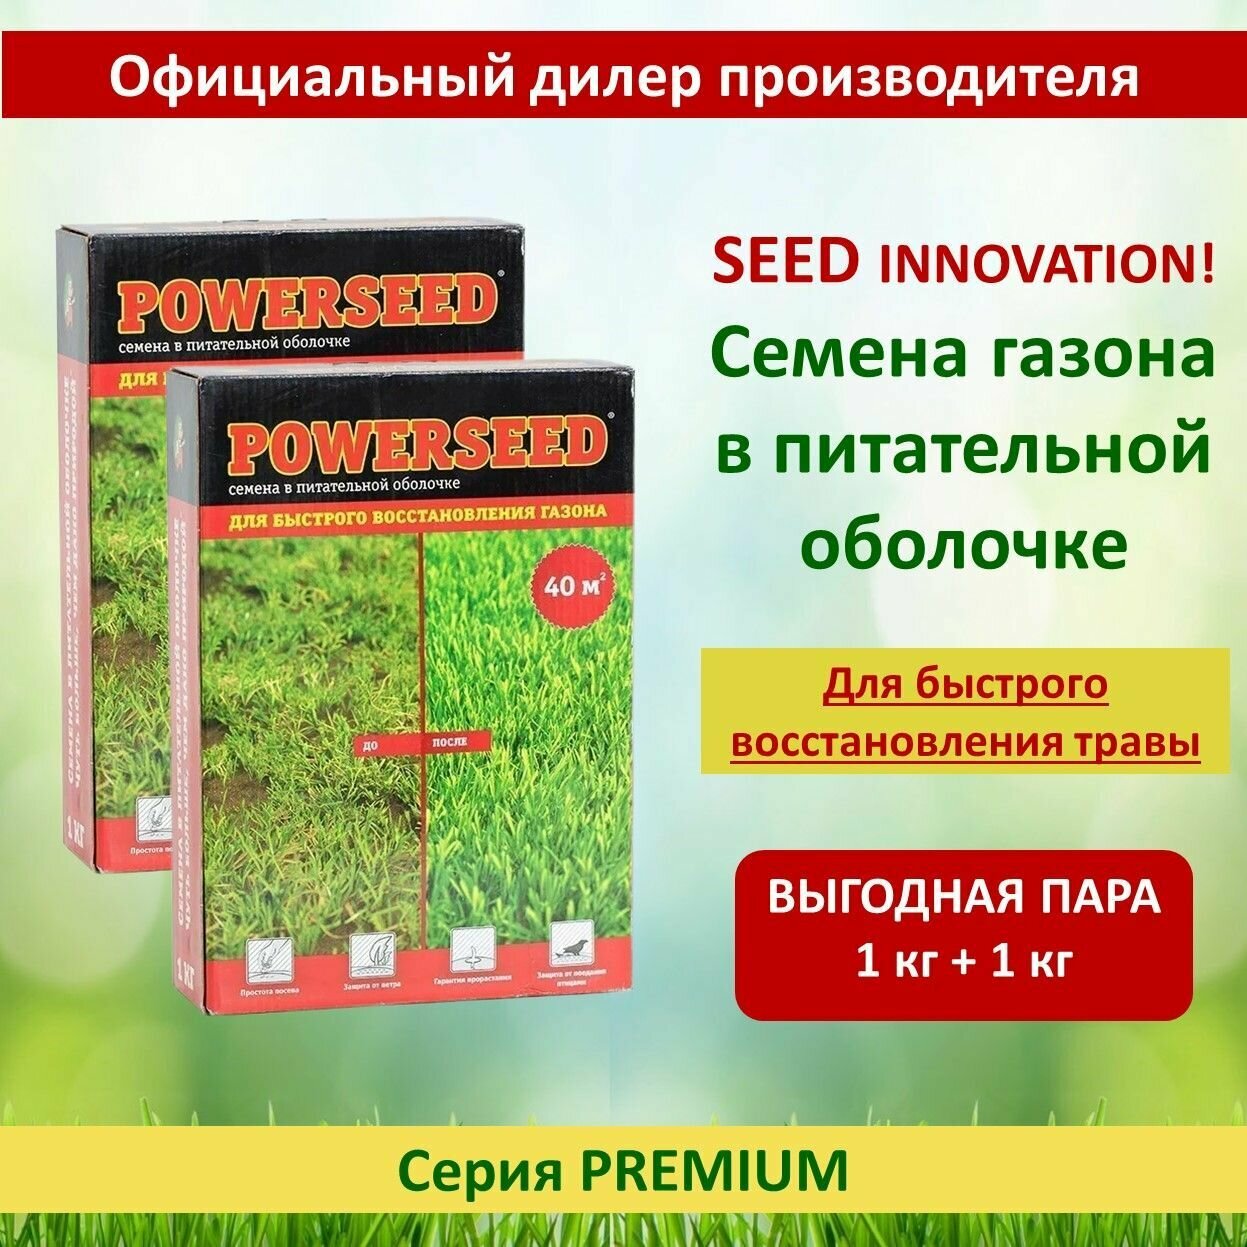 Семена в питательной оболочке Powerseed для быстрого восстановления газона 1 кг х 2 шт